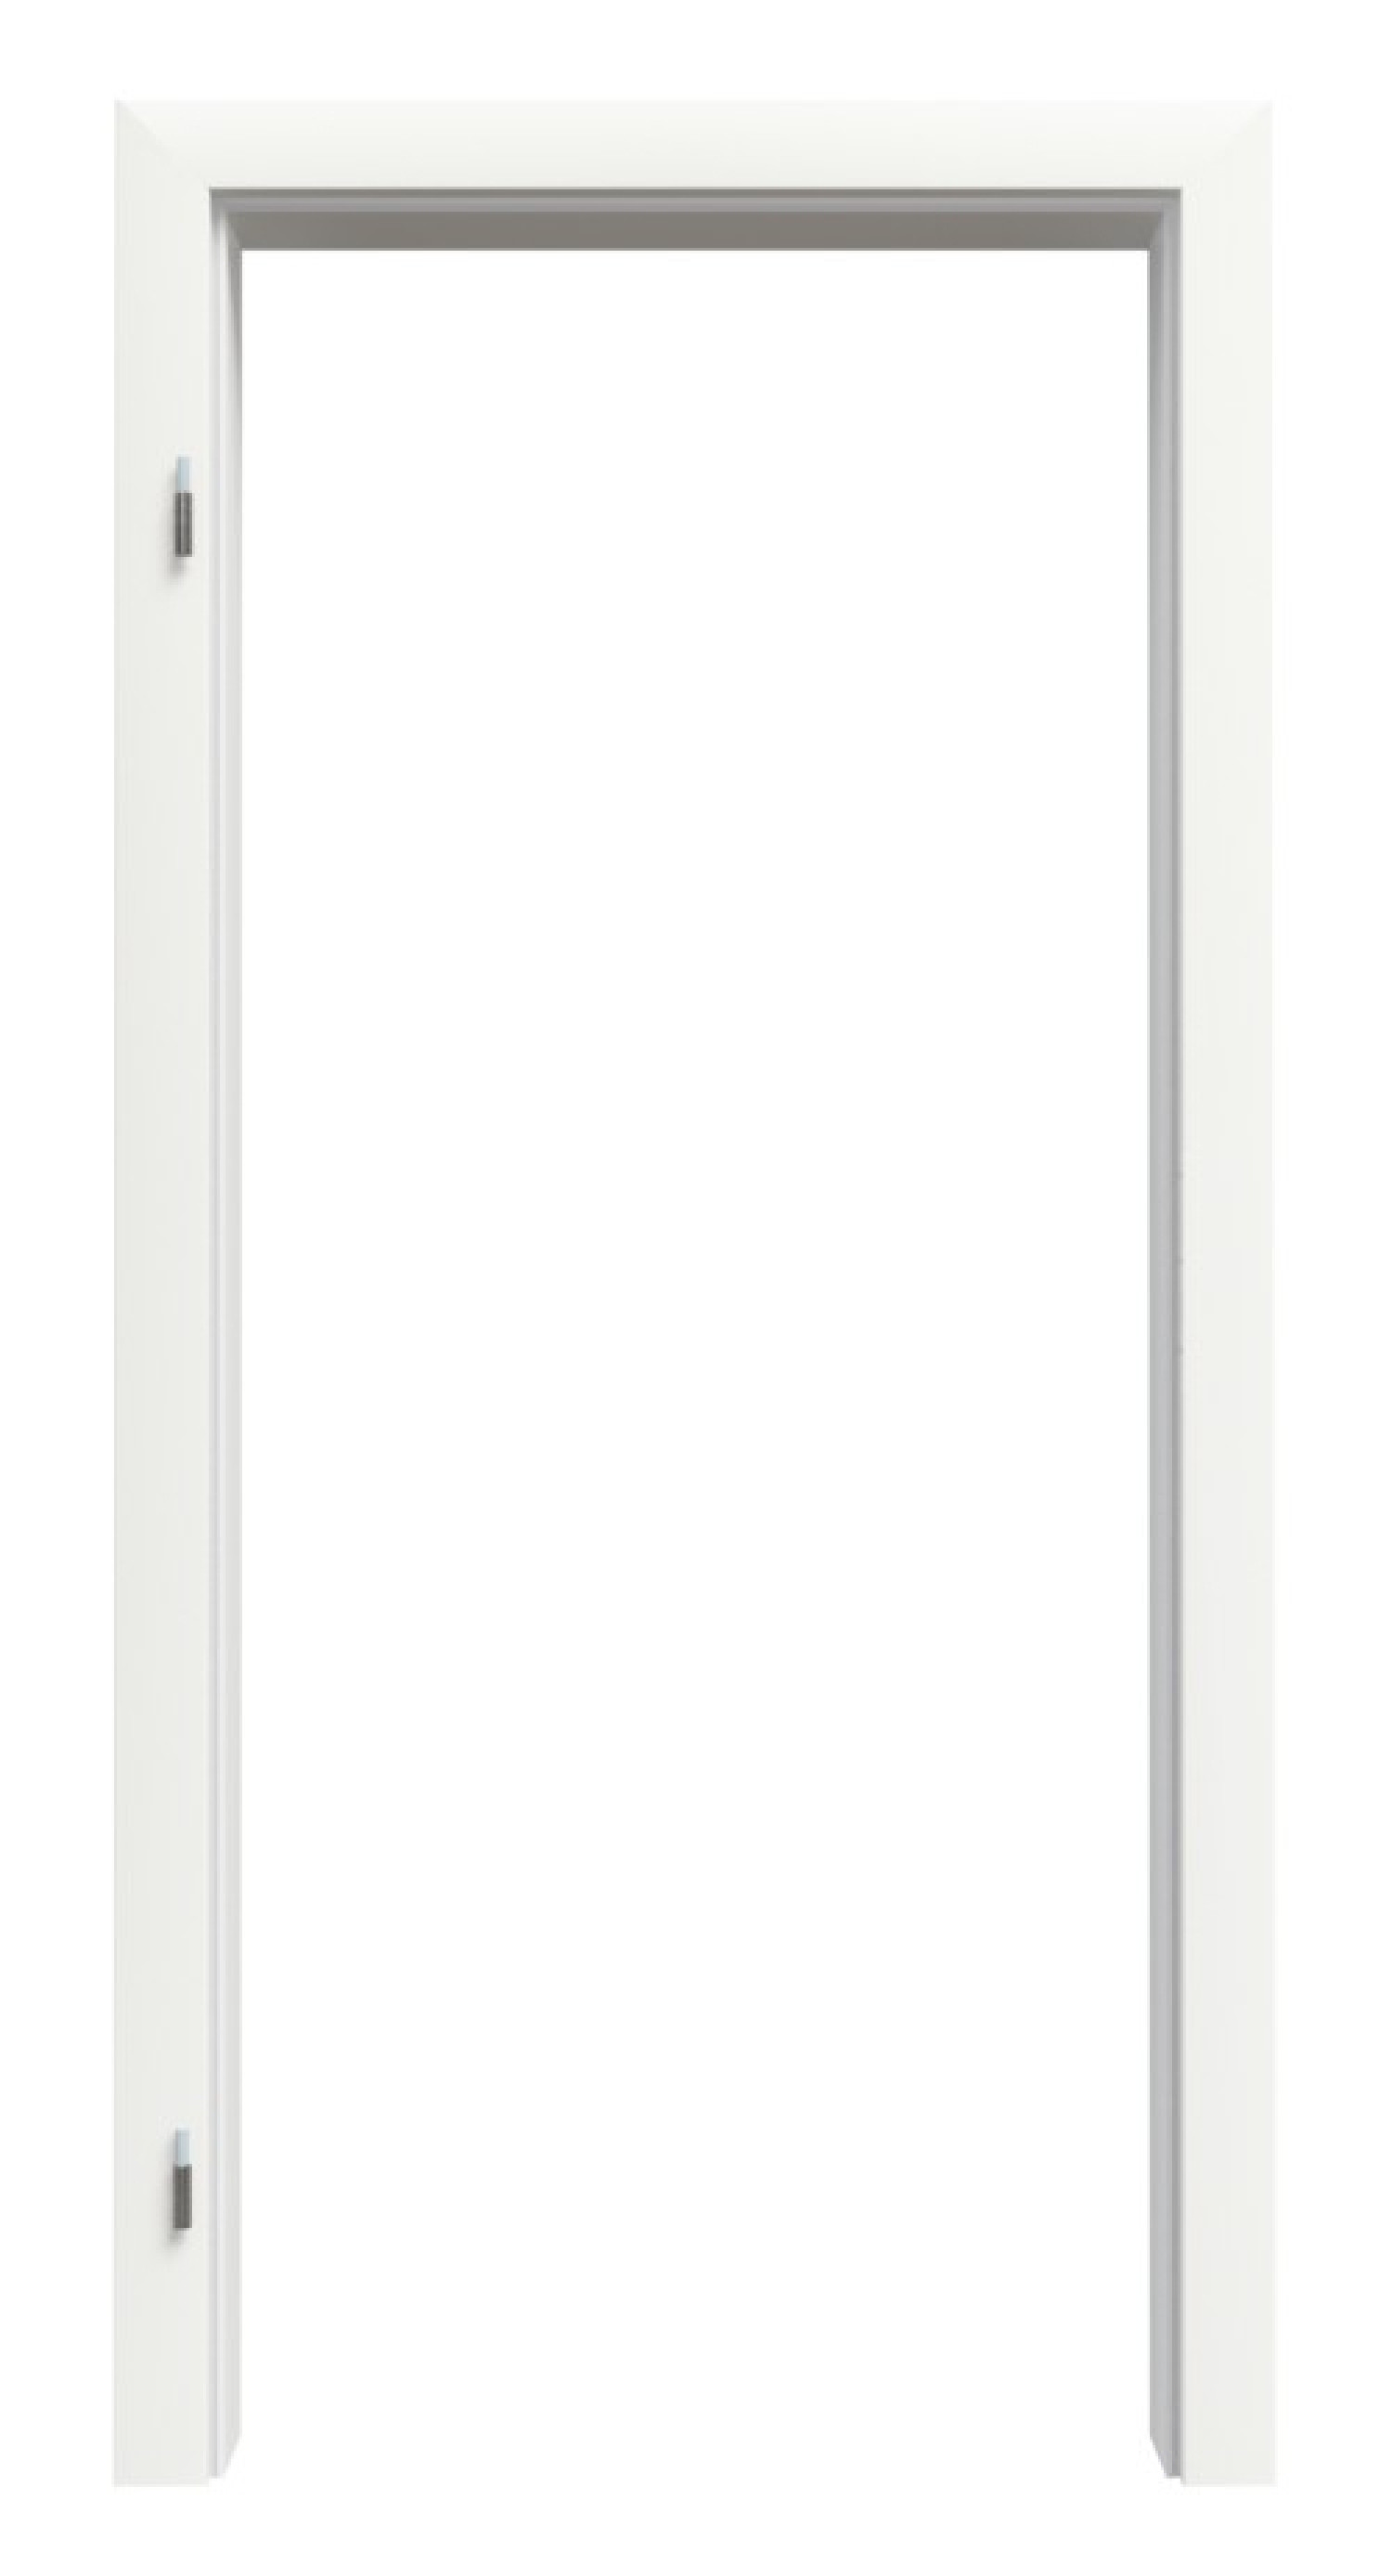 Bild von Zarge für Wohnungseingangstüren Weißlack RAL 9016 Premium ZA-01 mit Rundkante